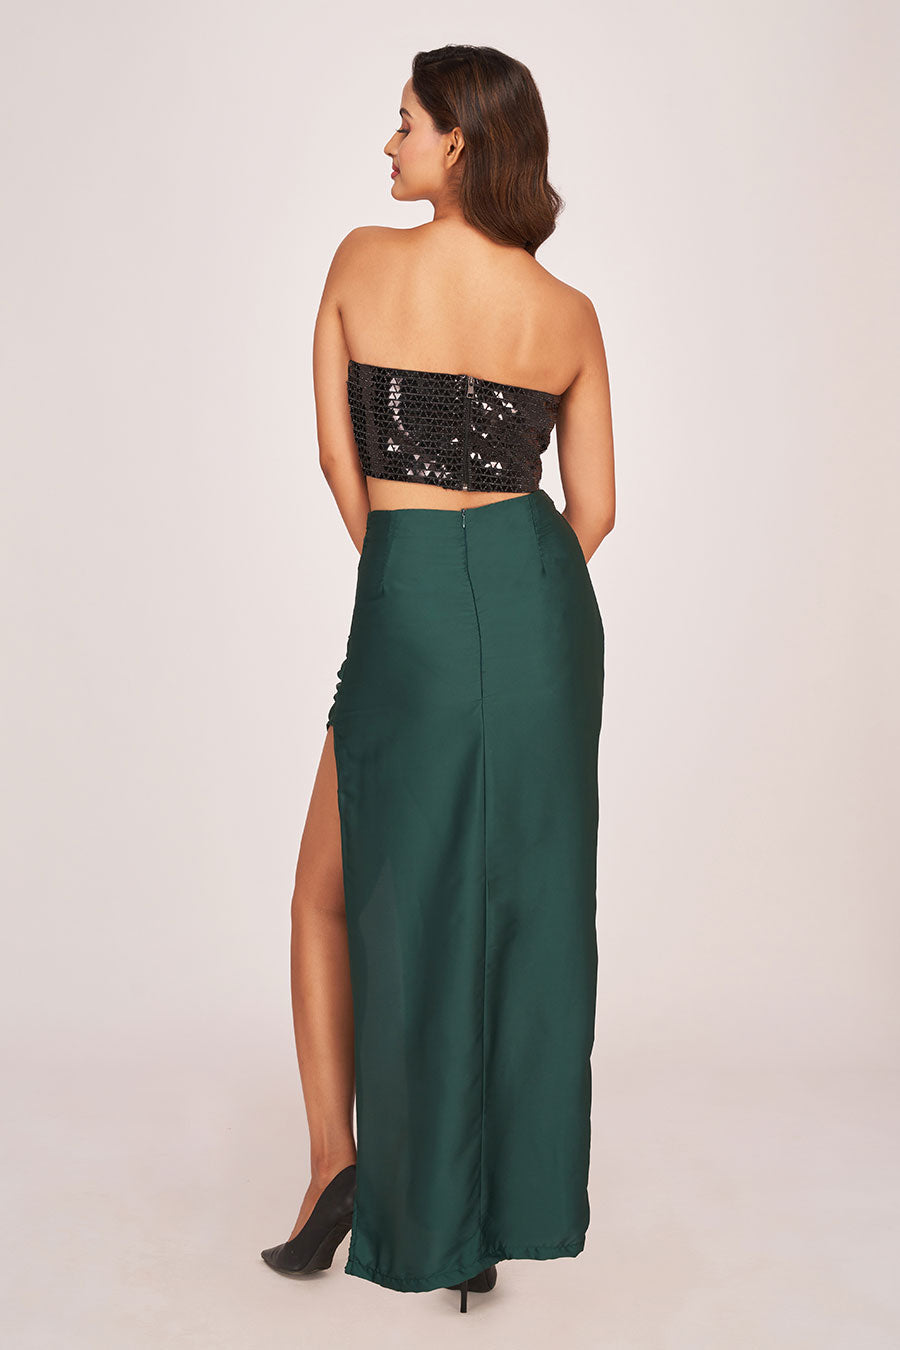 Black Embellished Top & Green Long Skirt Co-Ord Set